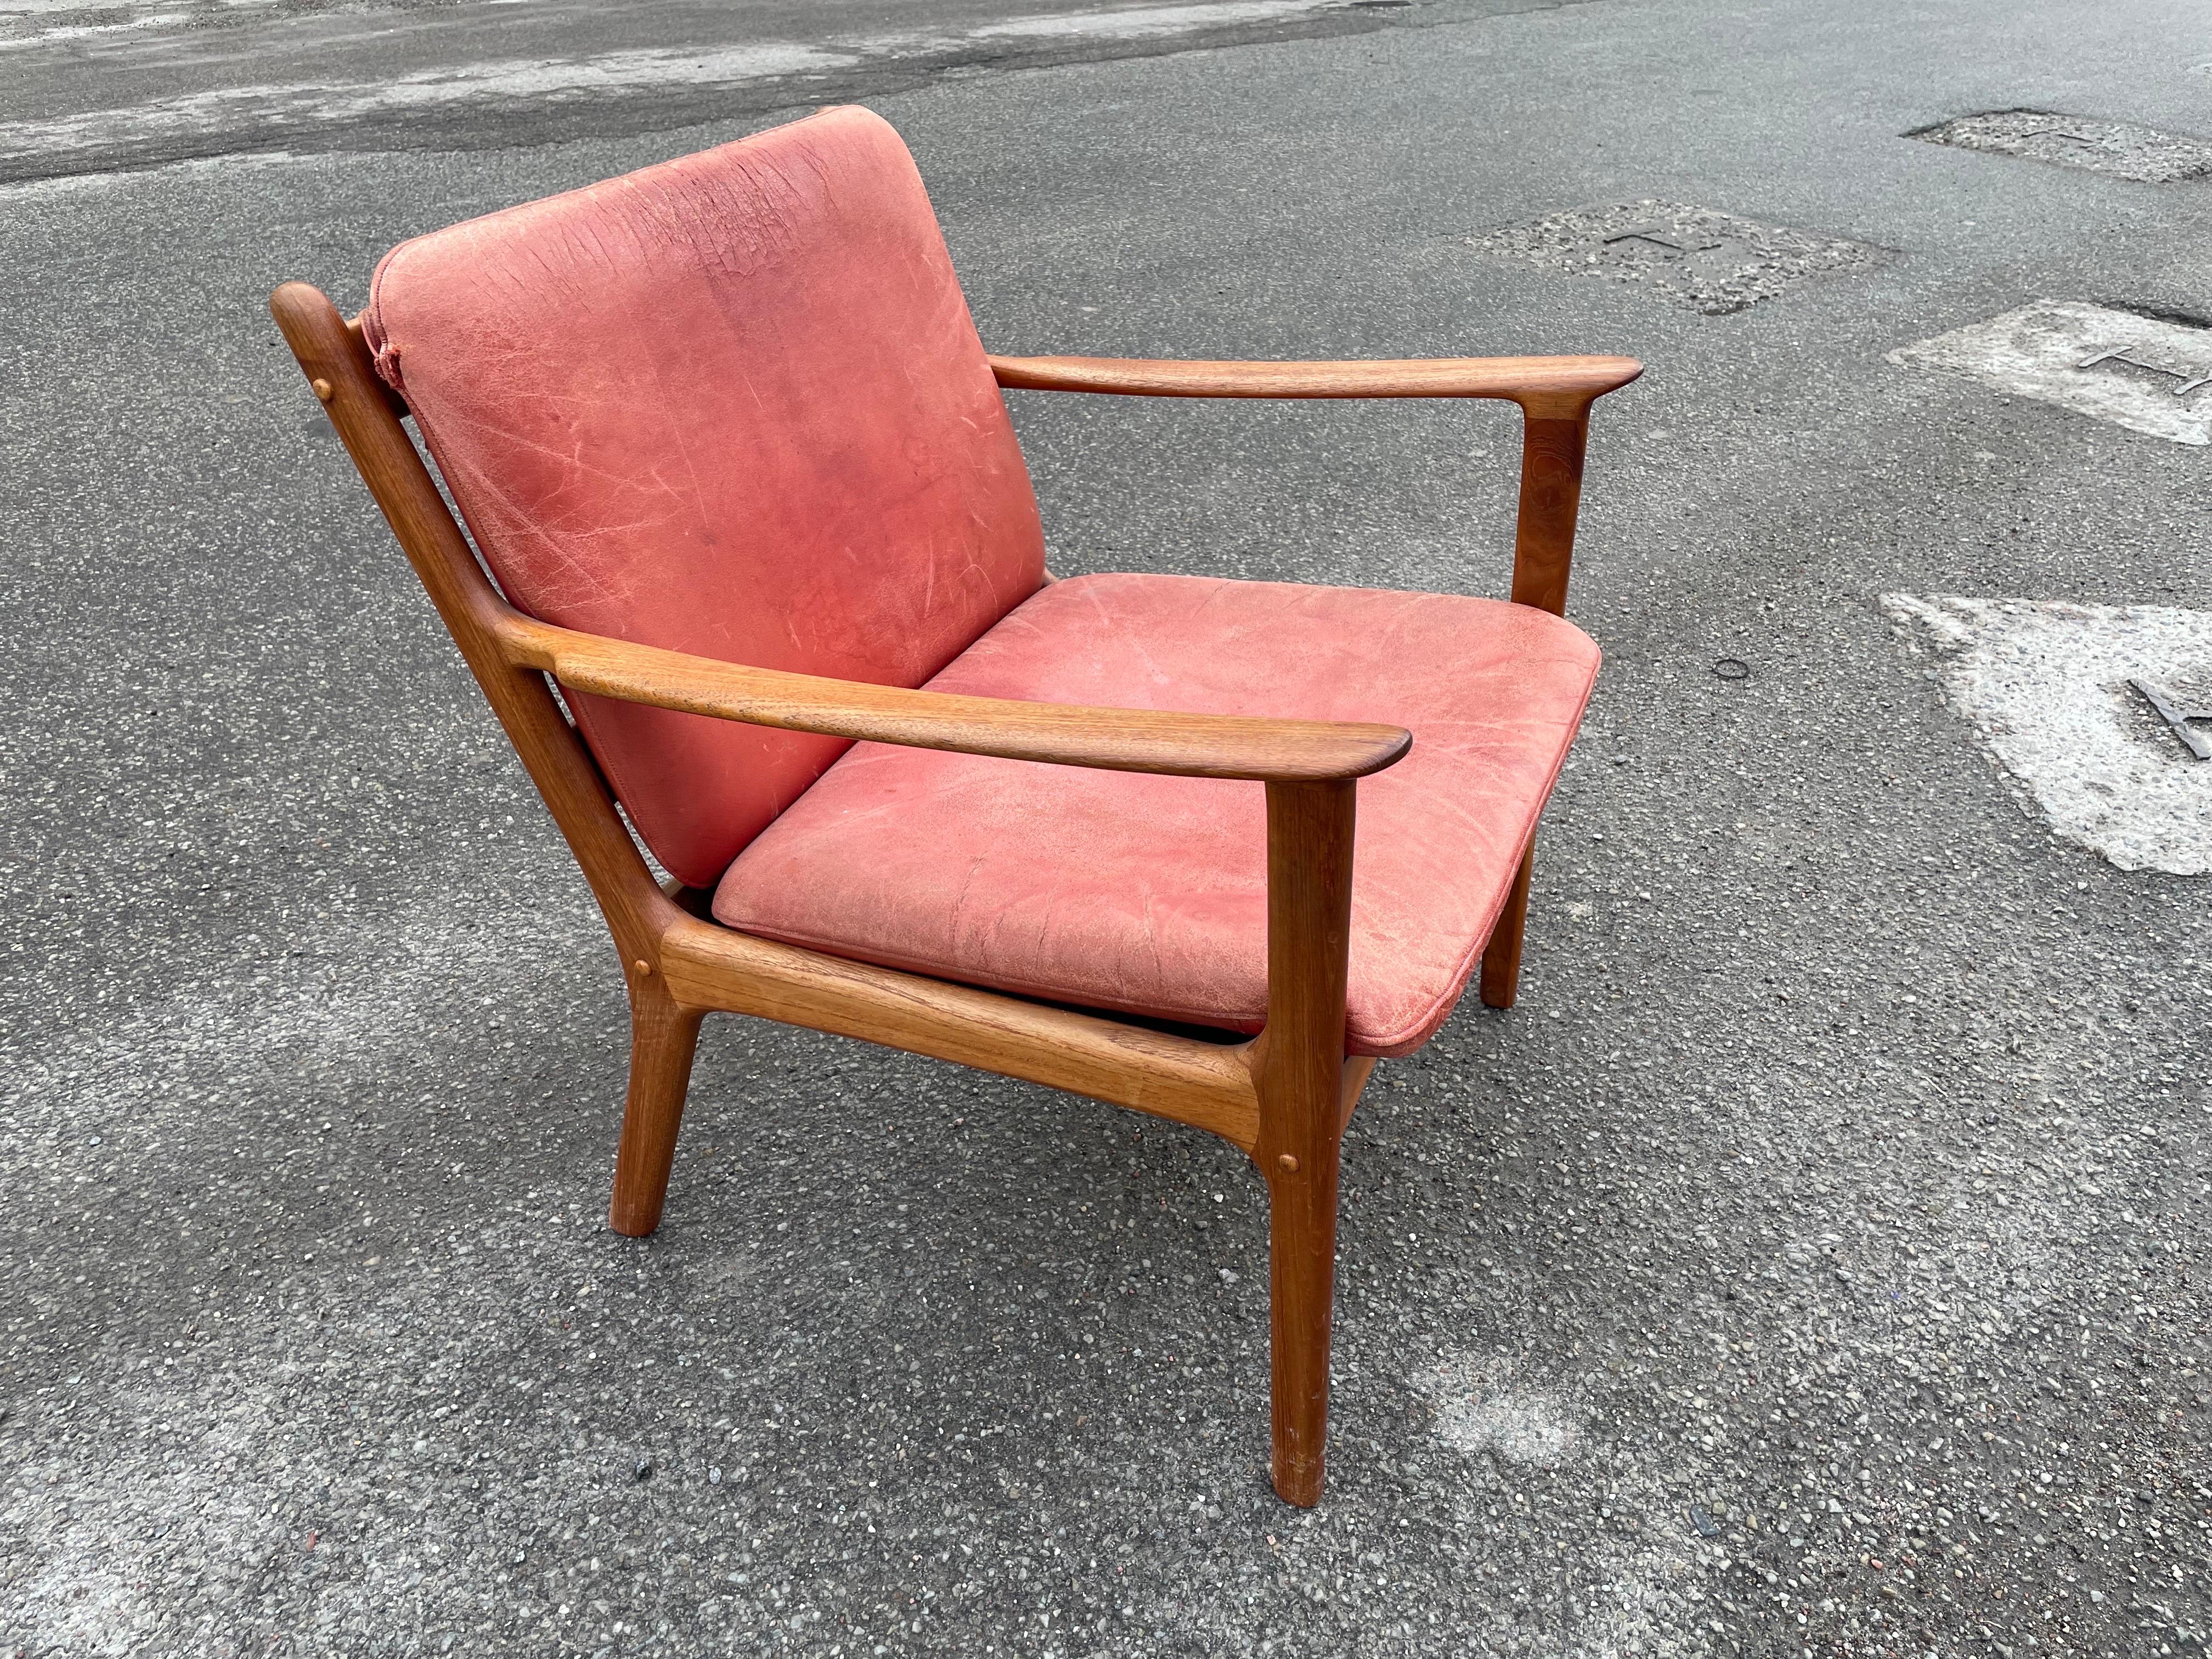 Ole Wanscher, Stuhl, Modell 'PJ 112' Teakholz Dänemark, 1950er Jahre.
Dieser Stuhl wurde von Ole Wanscher entworfen. Das Gestell zeigt elegante Linien, vor allem in den Armlehnen. Ole Wanscher, Stuhl, Modell 'PJ 112' aus Teakholz.

Polstermöbel